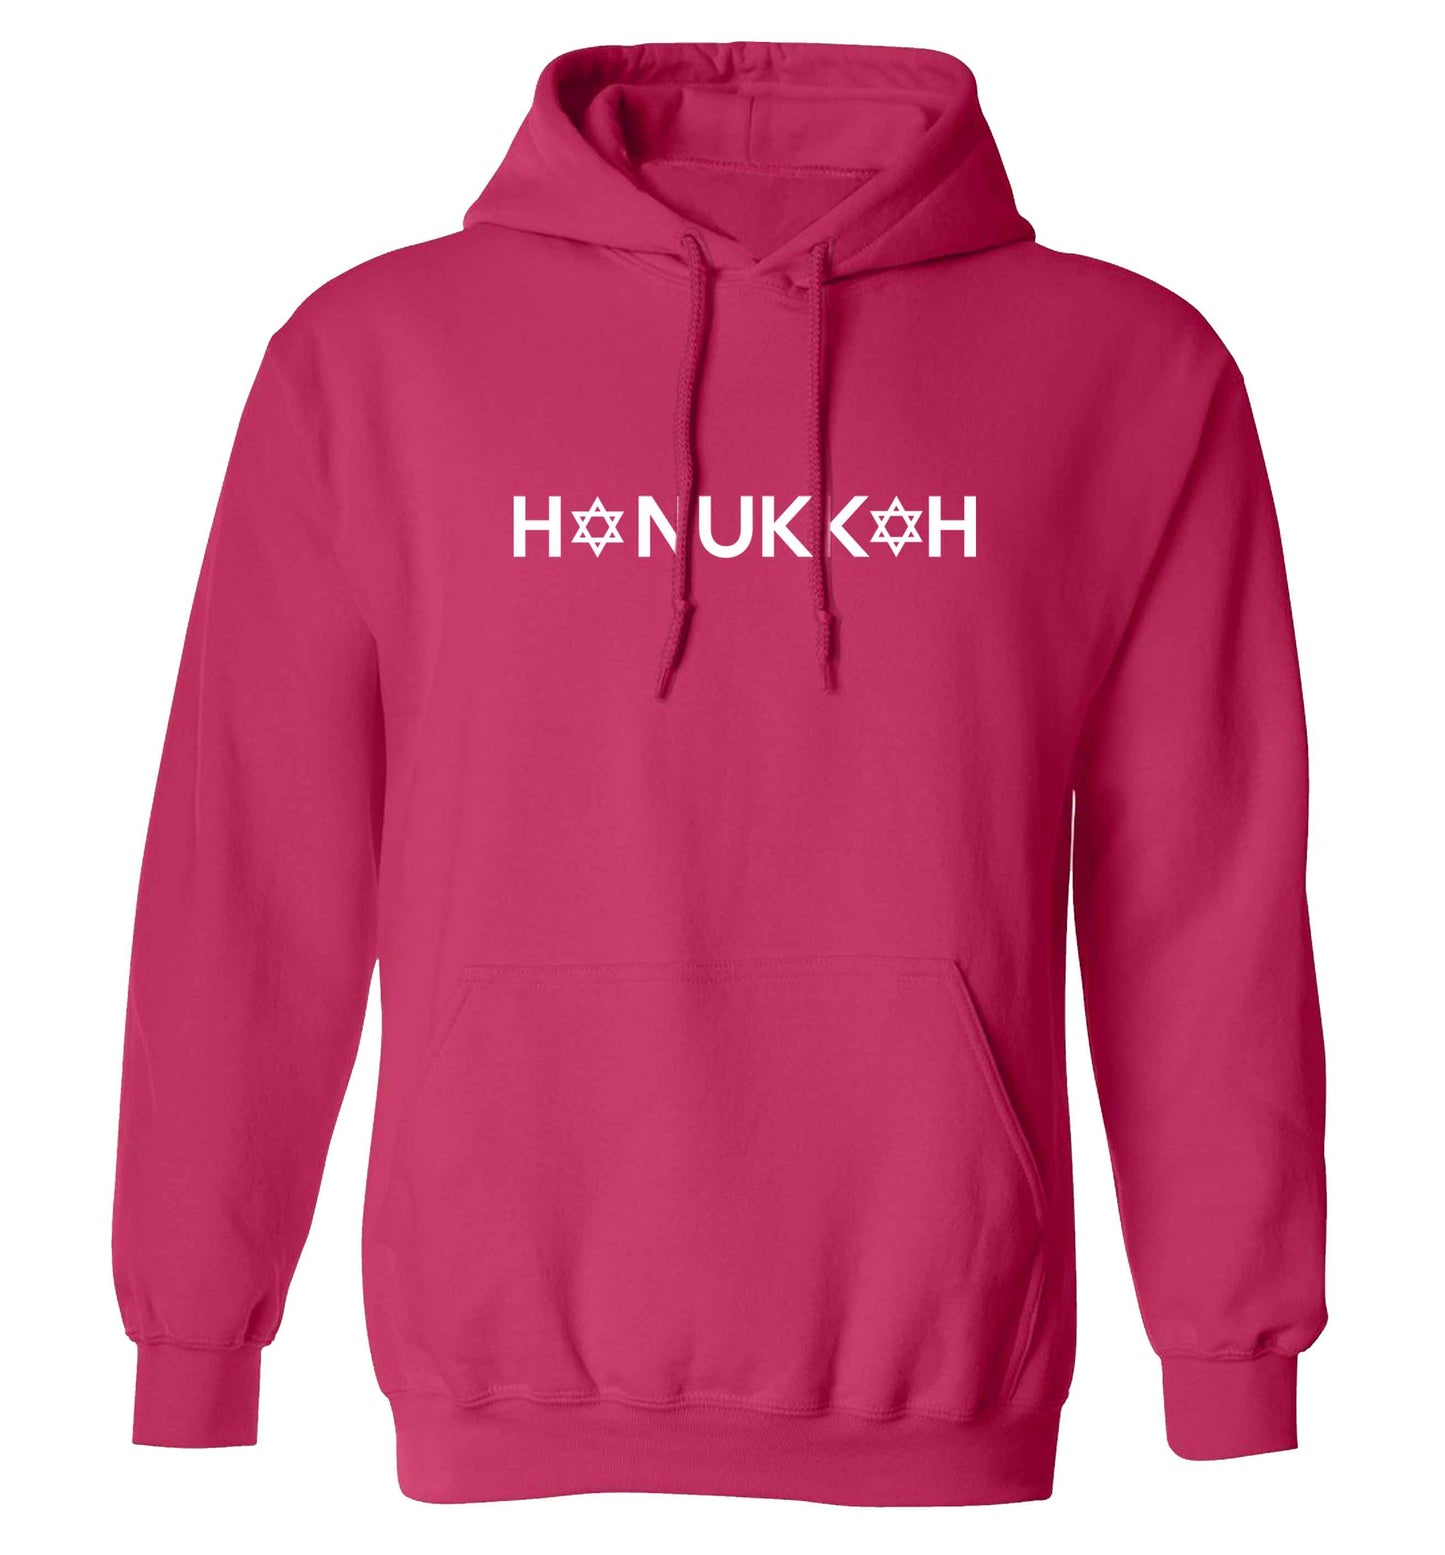 Hanukkah star of david adults unisex pink hoodie 2XL